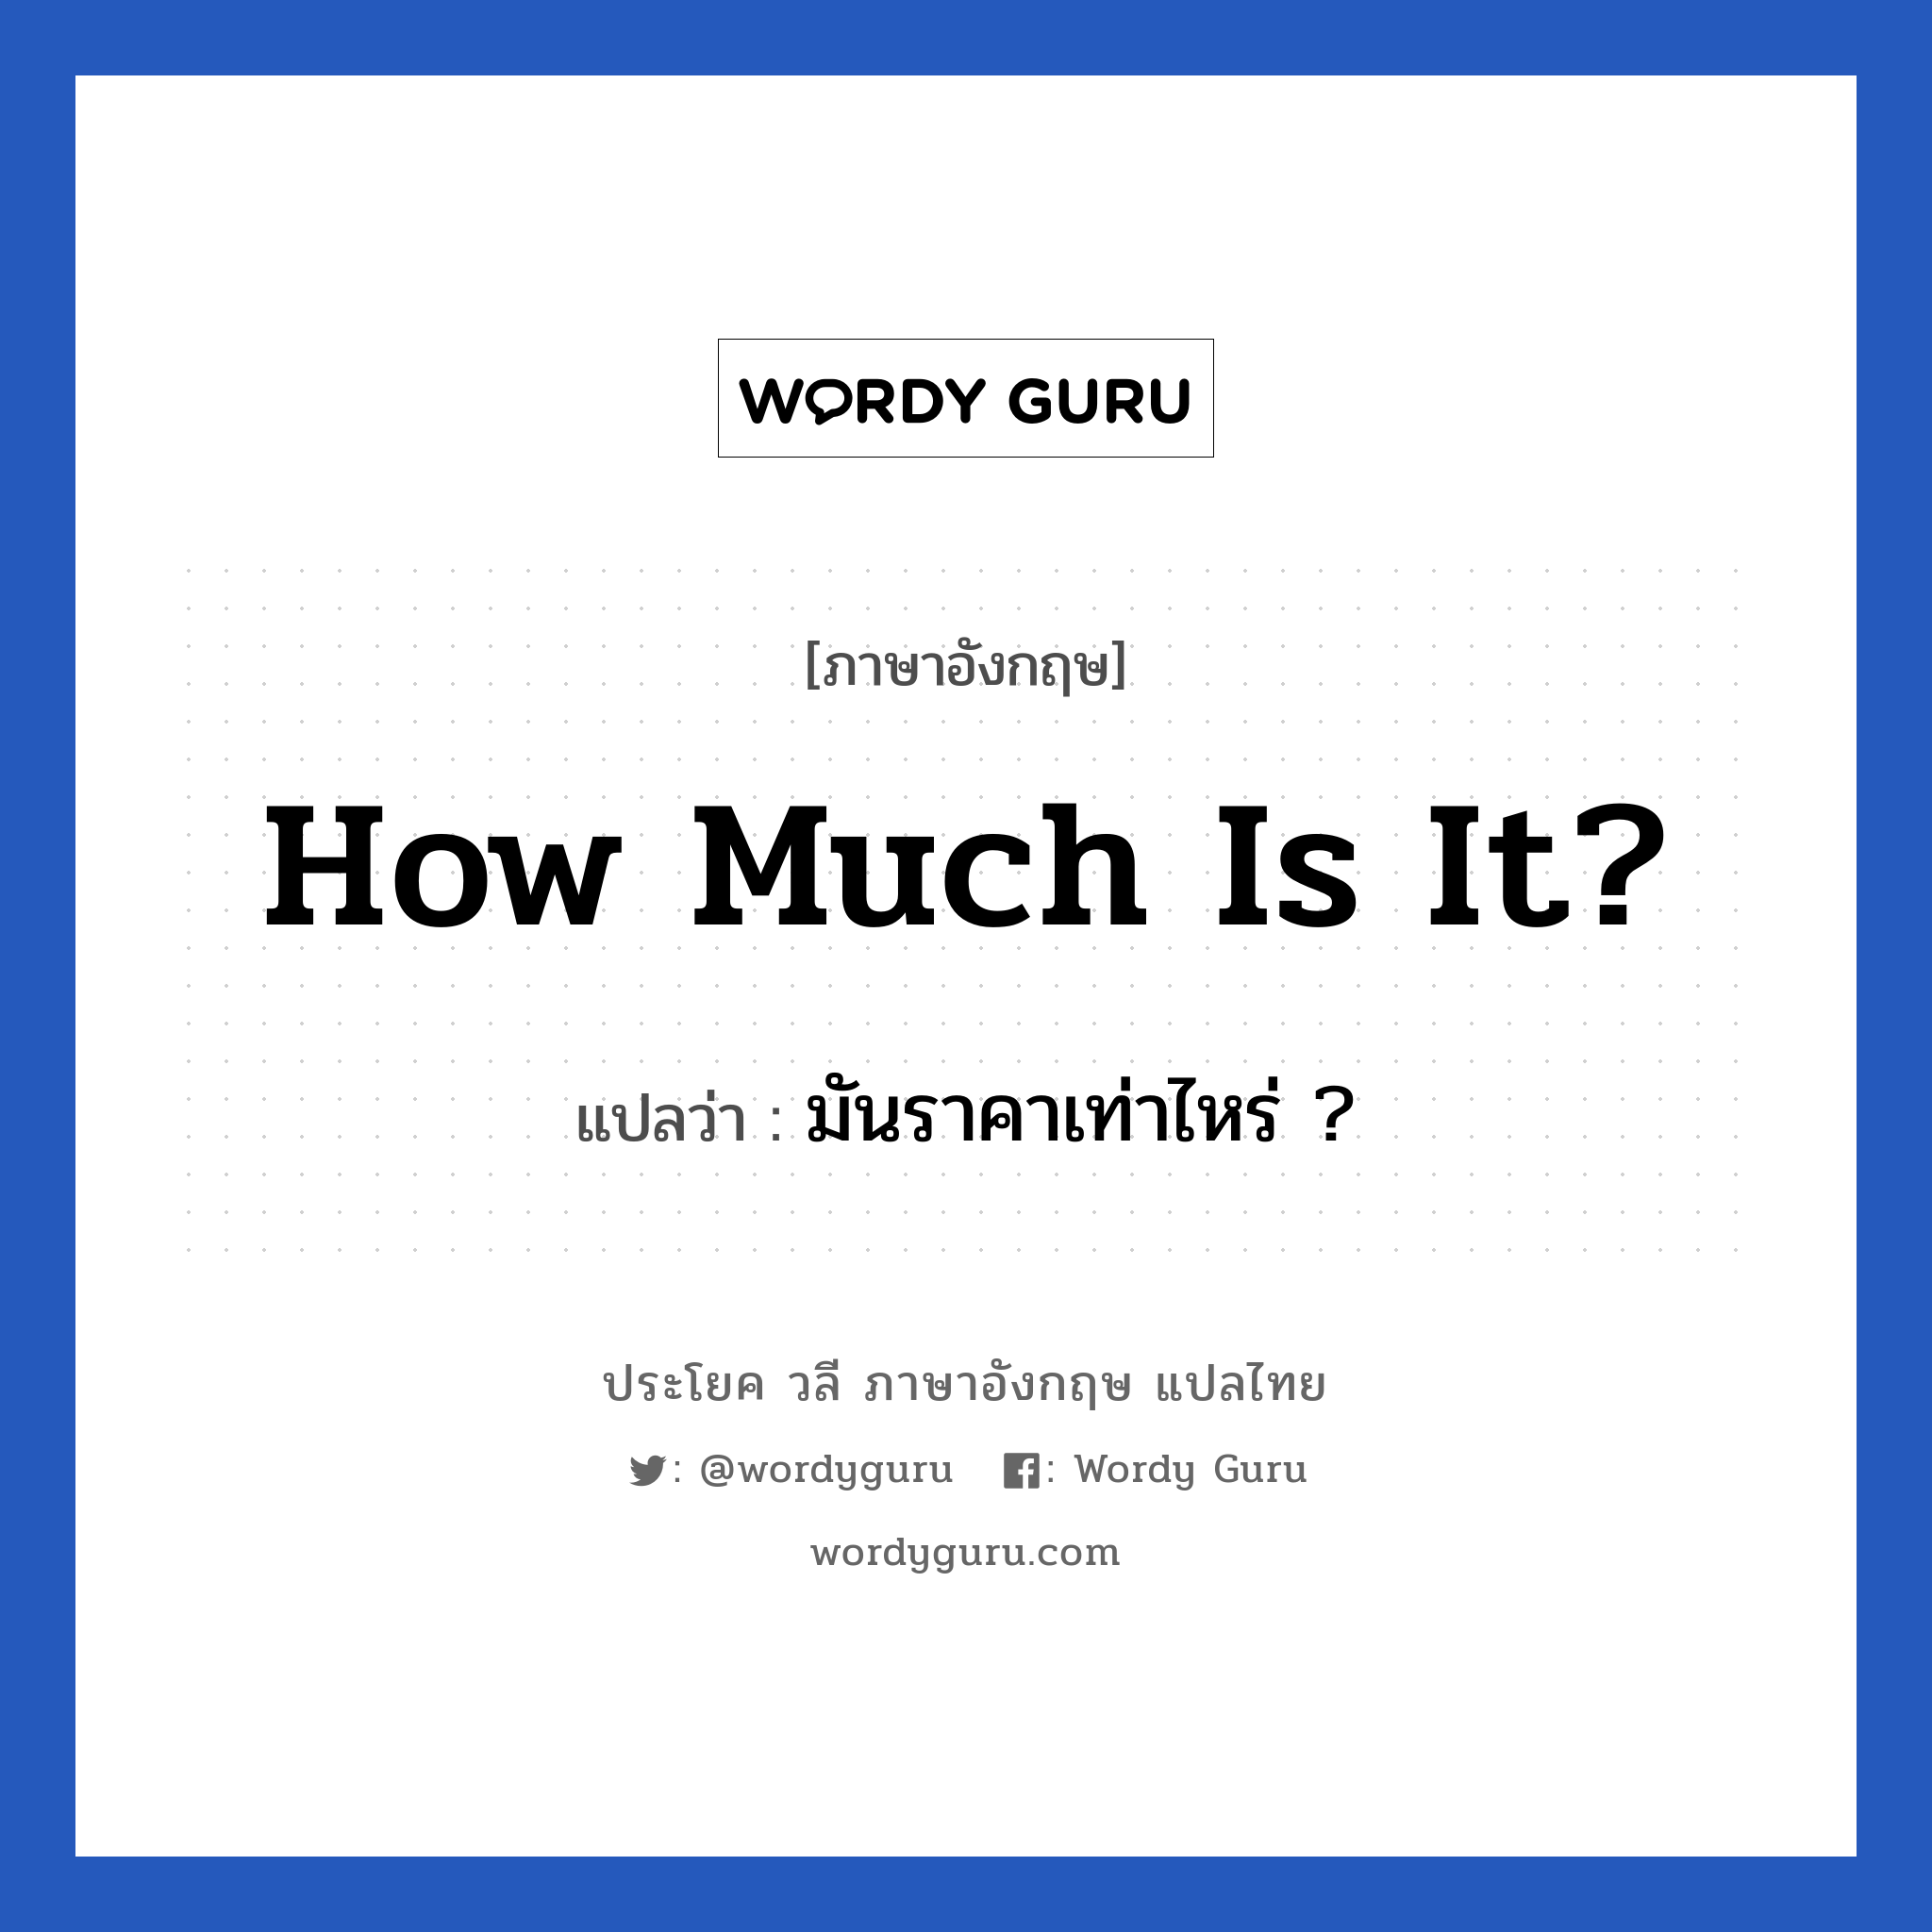 How much is it? แปลว่า?, วลีภาษาอังกฤษ How much is it? แปลว่า มันราคาเท่าไหร่ ?